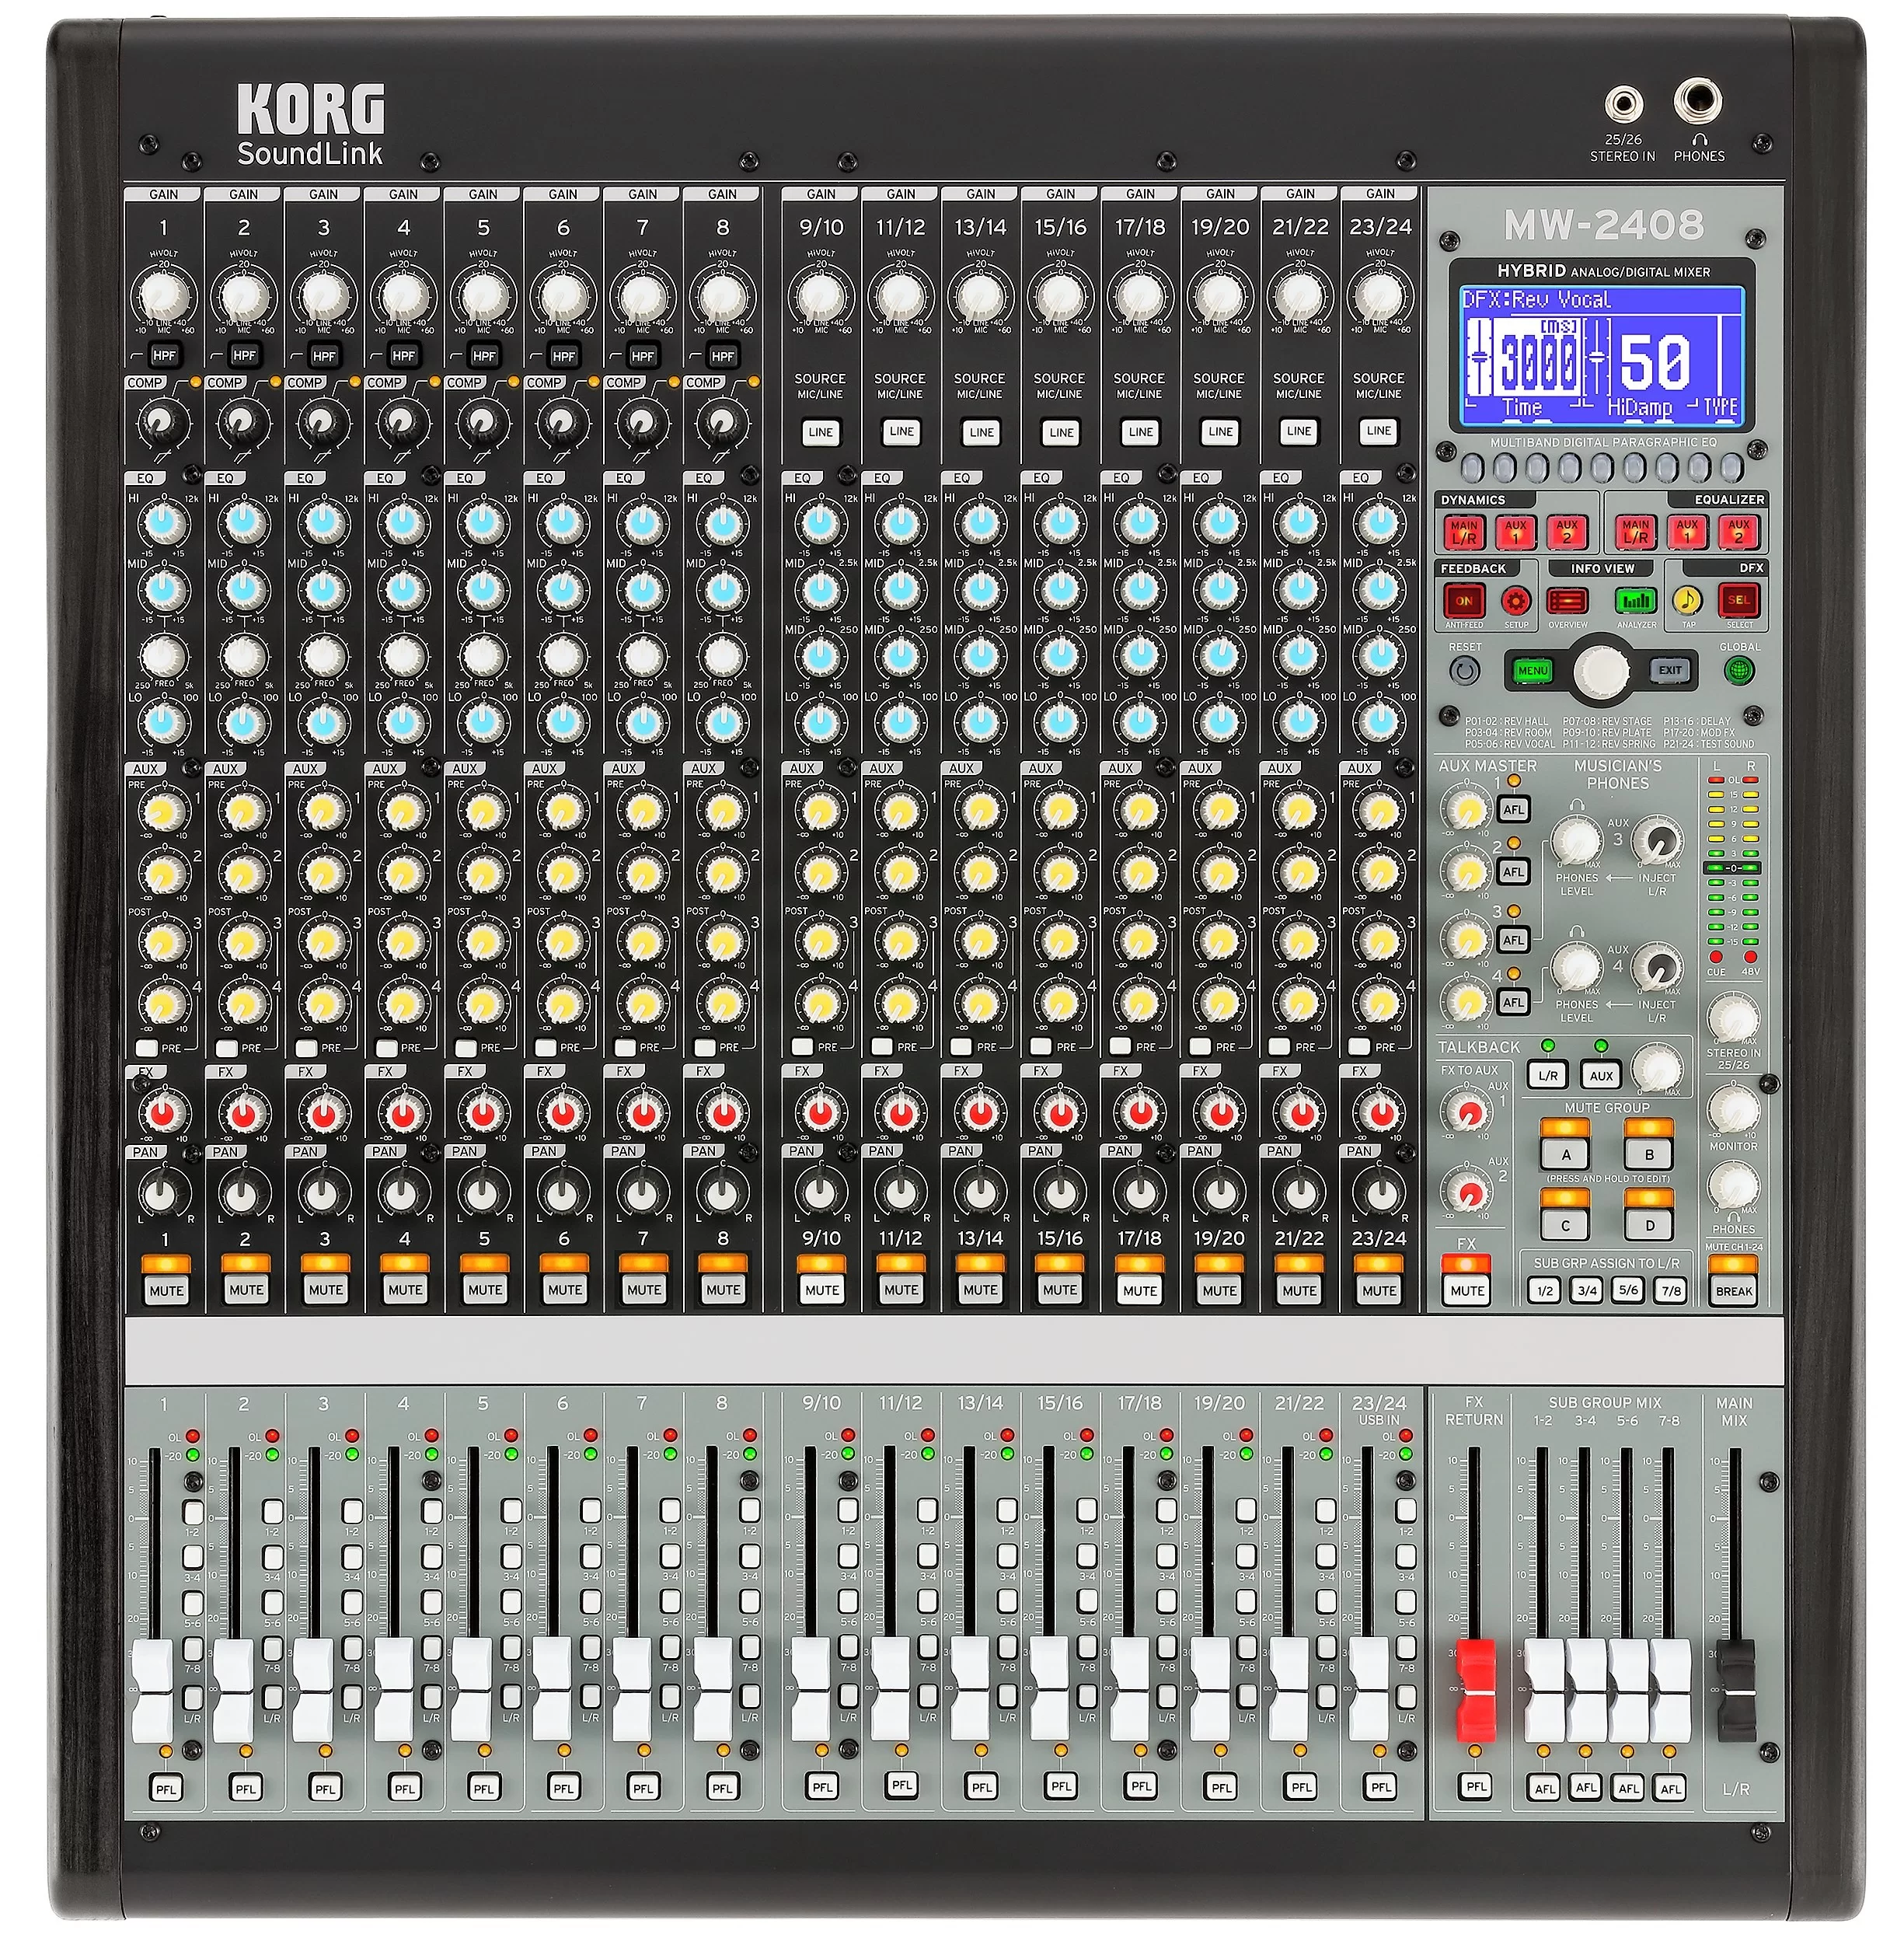 KORG MW-2408 Hybrid Analog/Digital Mixer